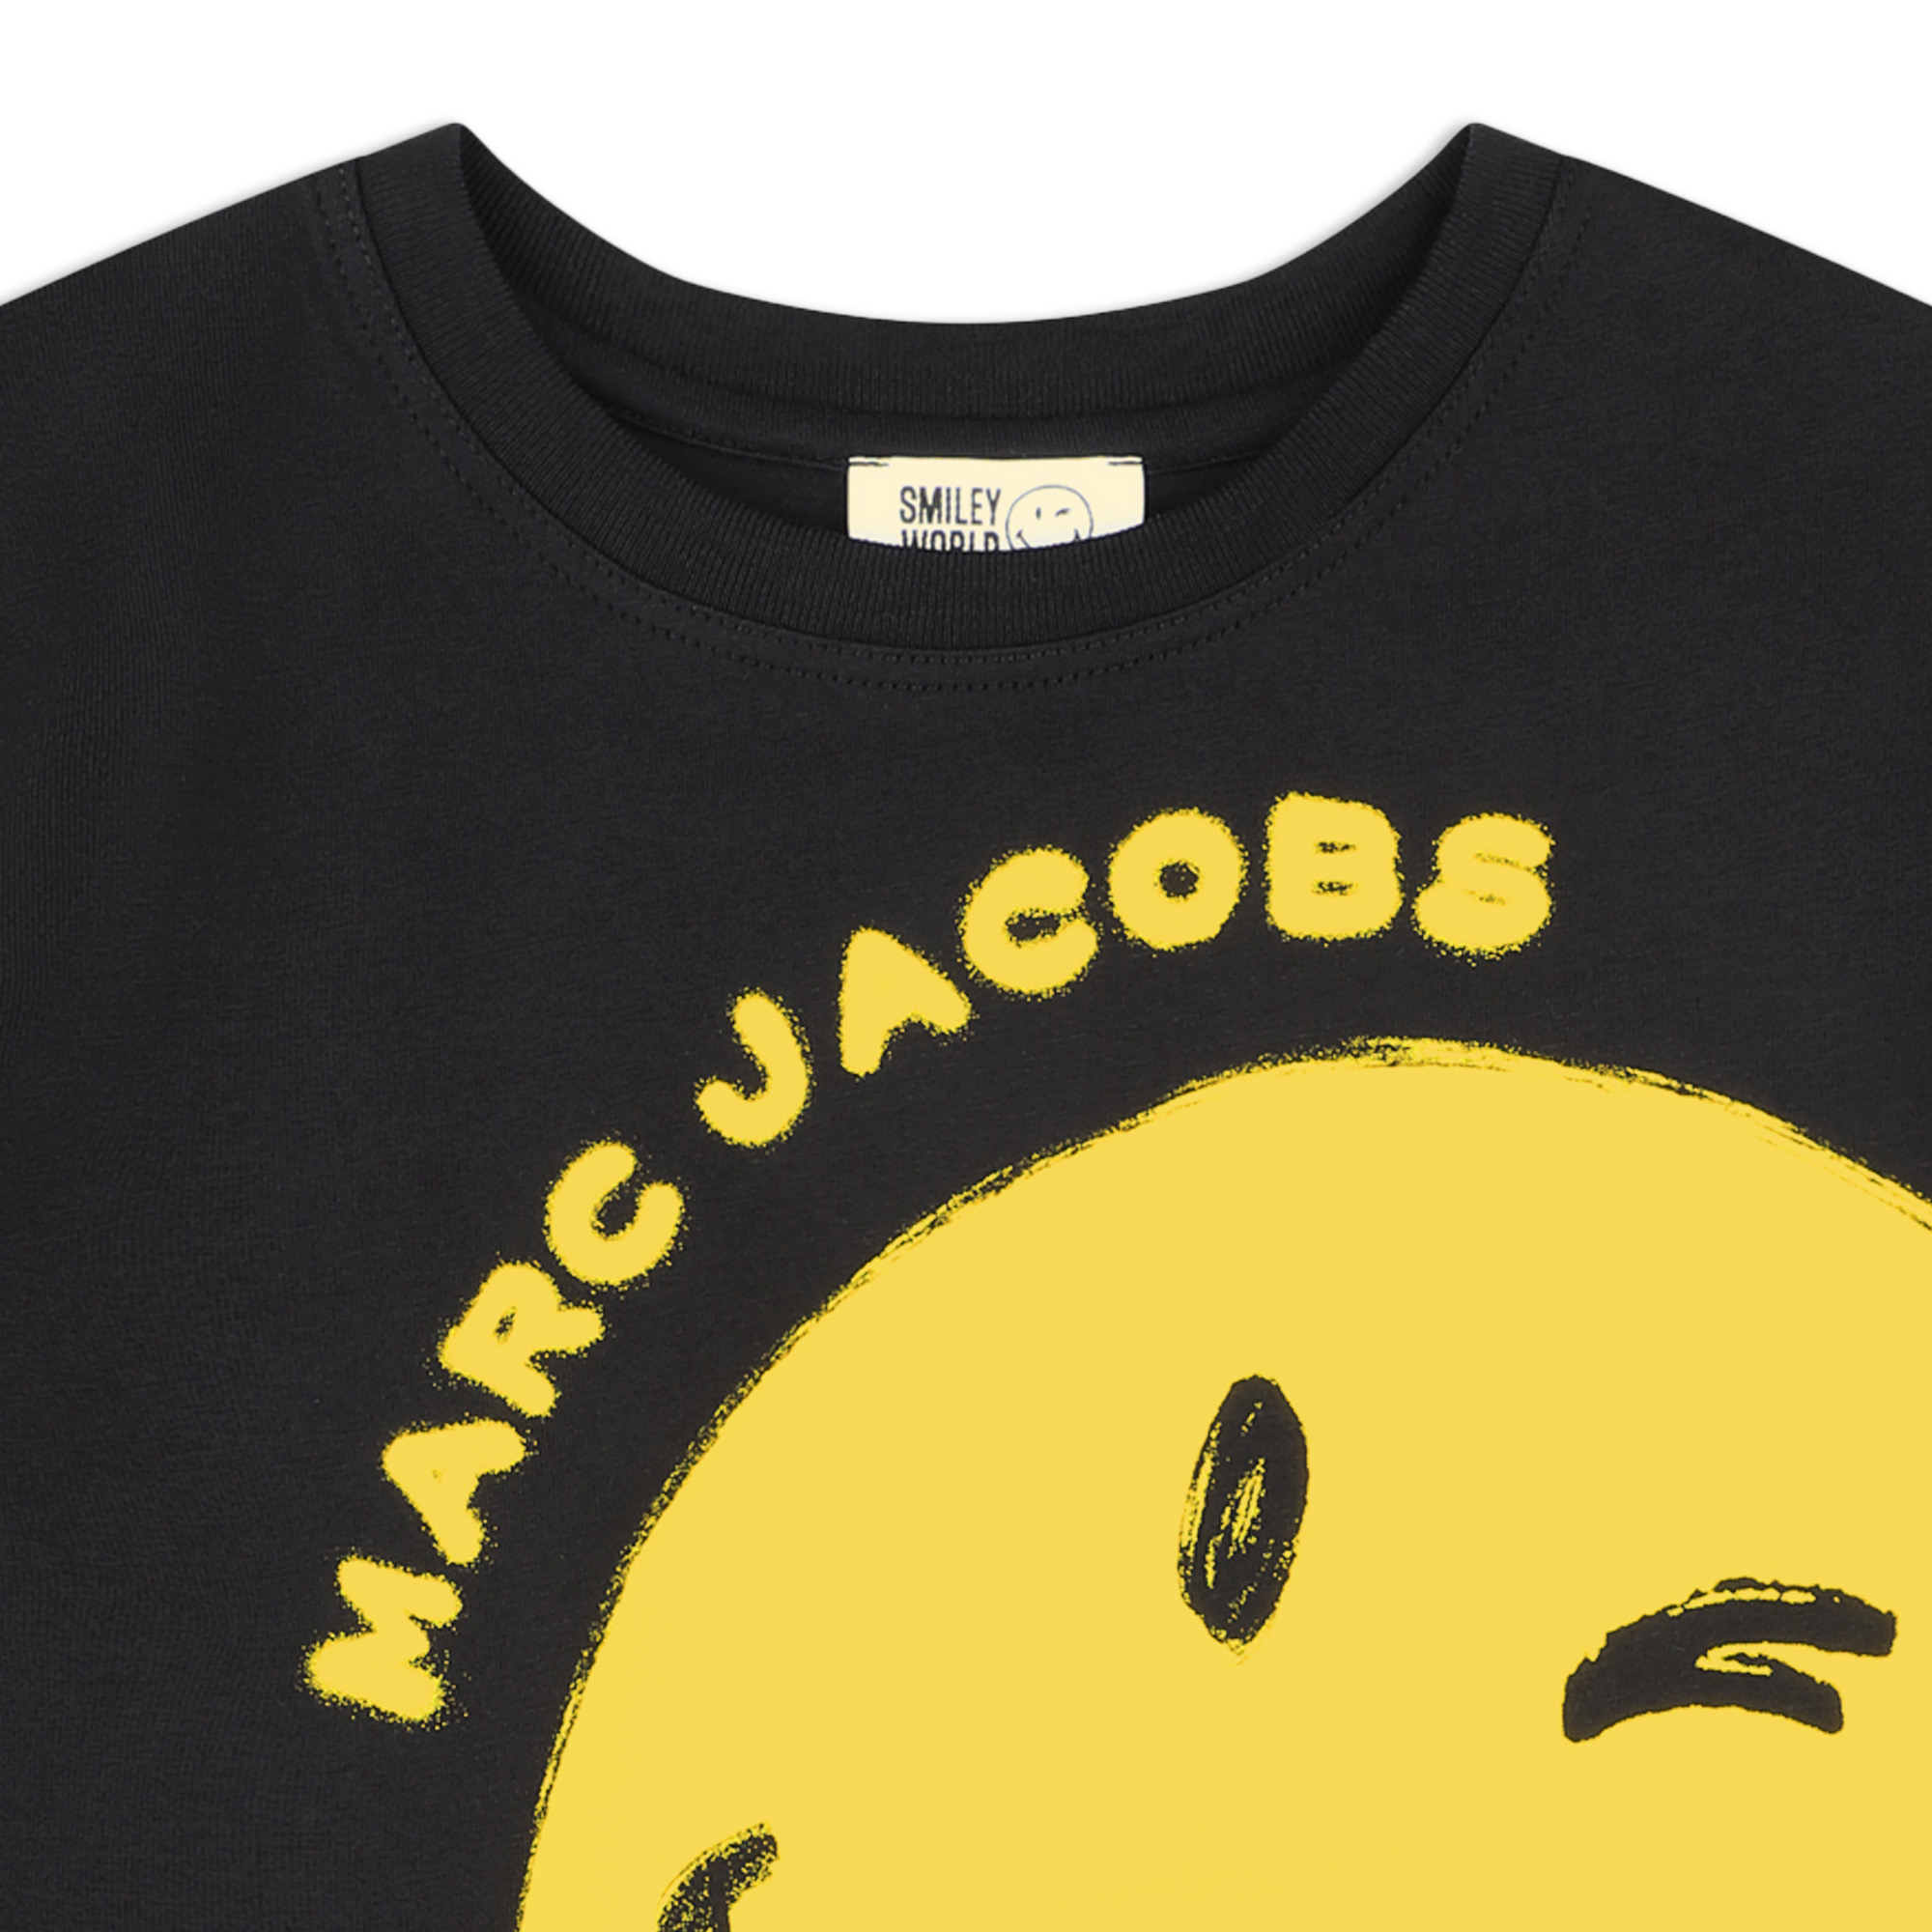 Originelles T-Shirt MARC JACOBS Für JUNGE